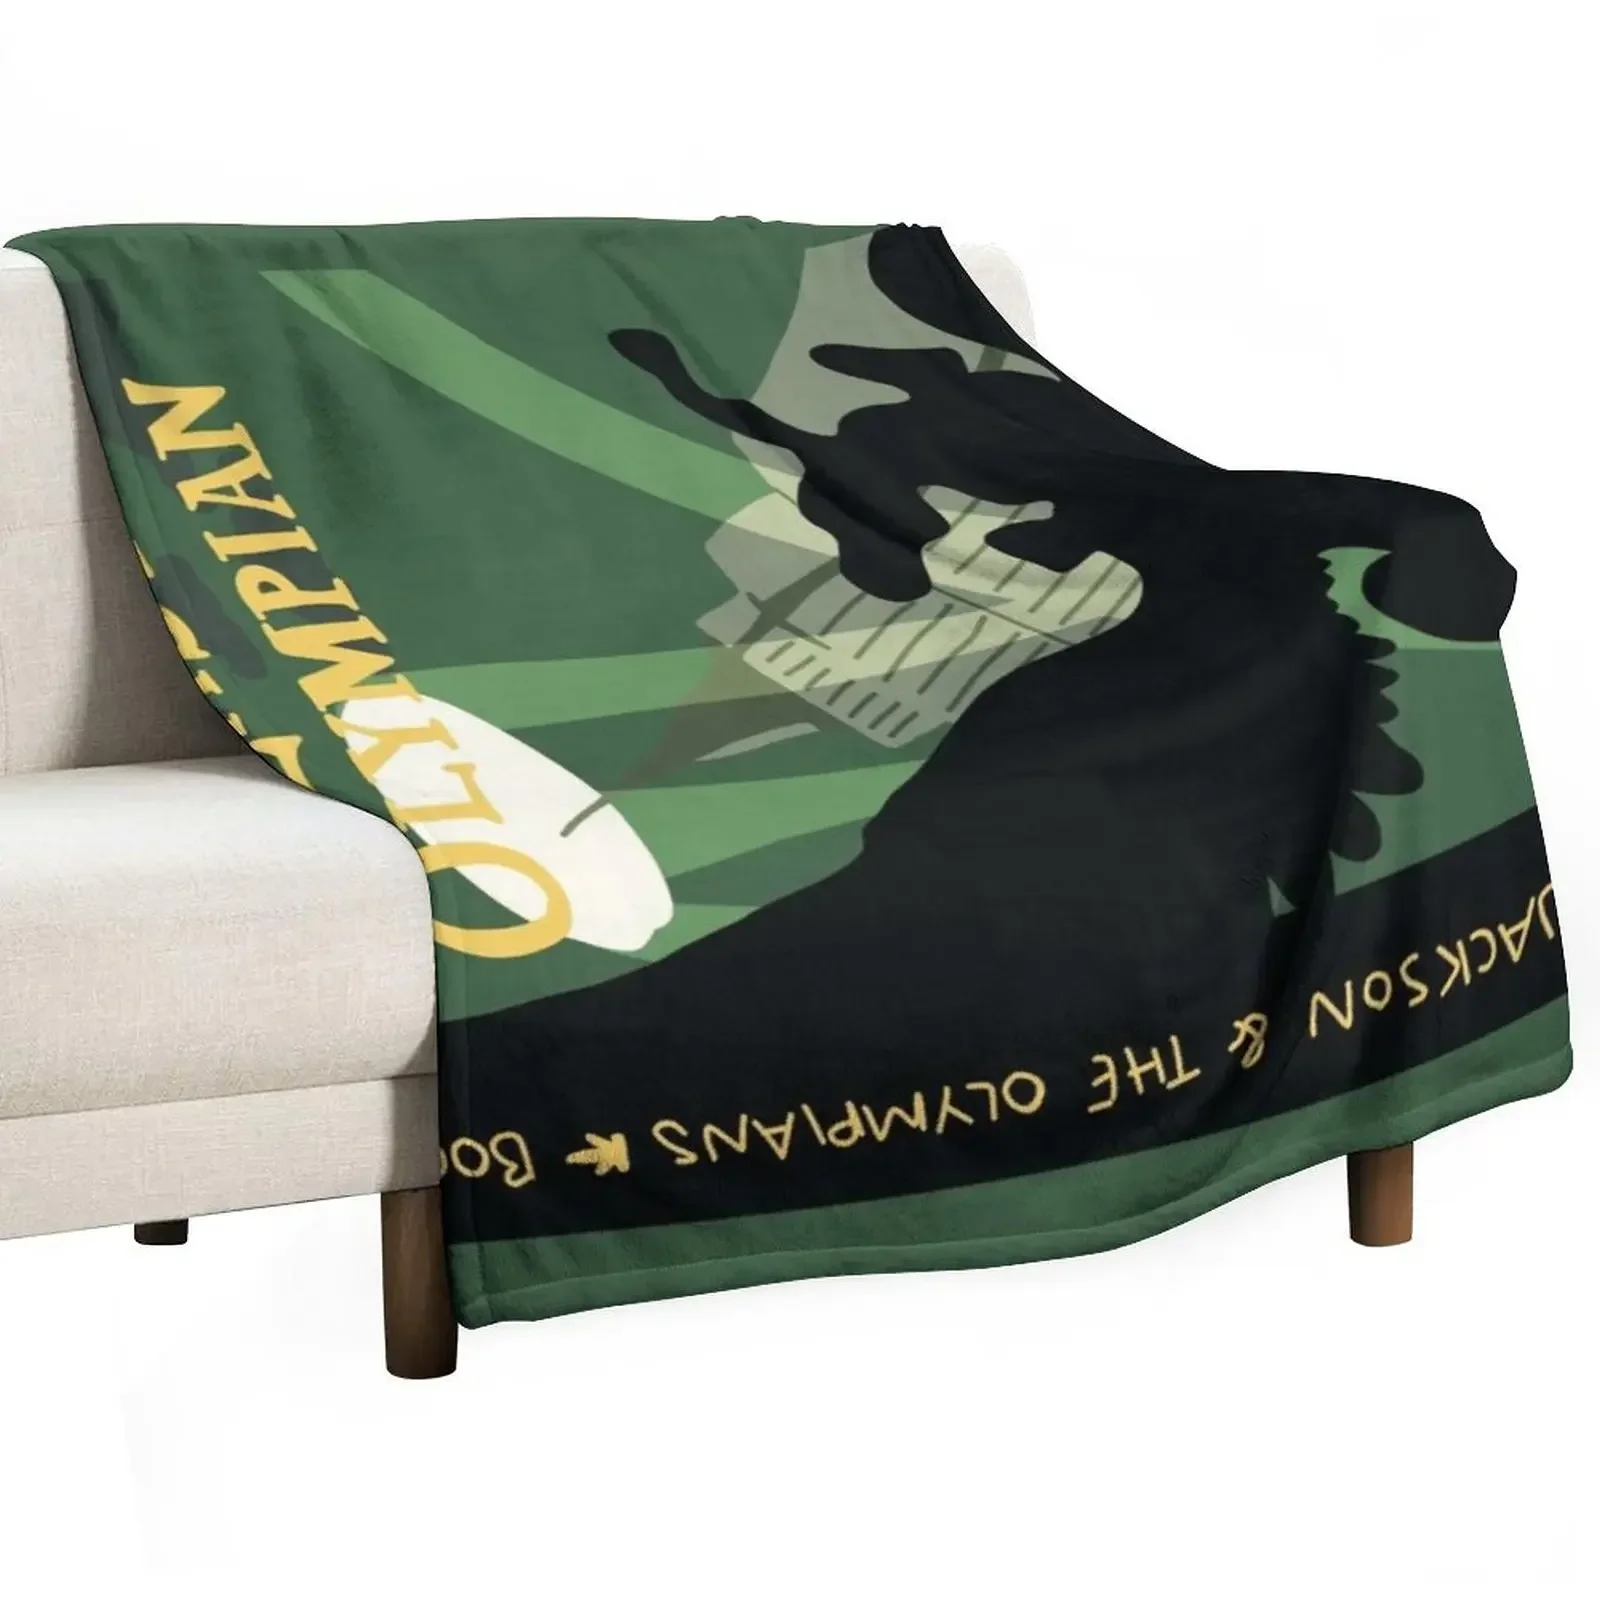 

Одеяло percy jackson-tlo, одеяло для косплея из аниме, очень большие одеяла